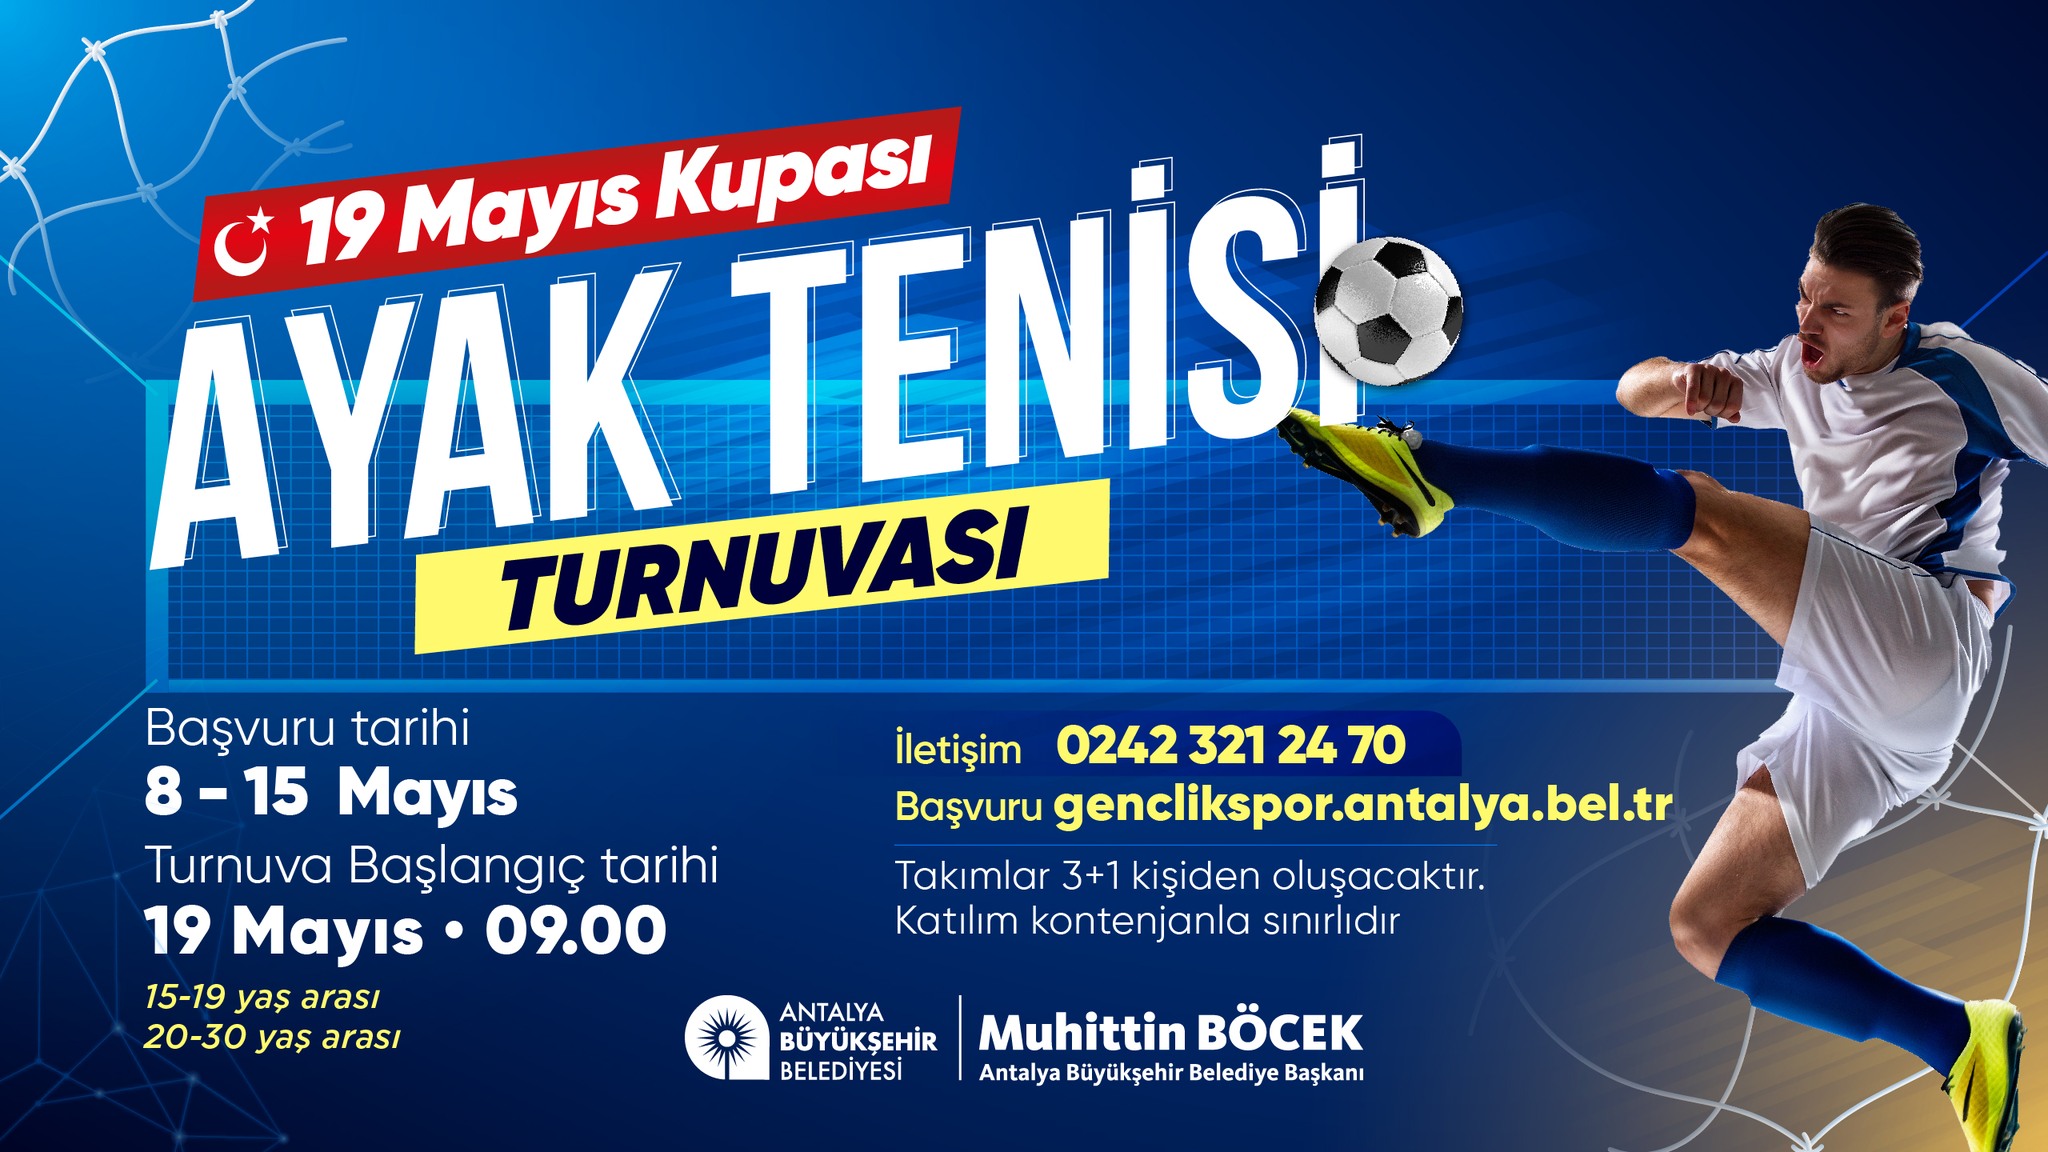 Antalya Büyükşehir Belediyesi, Gençlere Ayak Tenisi Turnuvası Düzenliyor